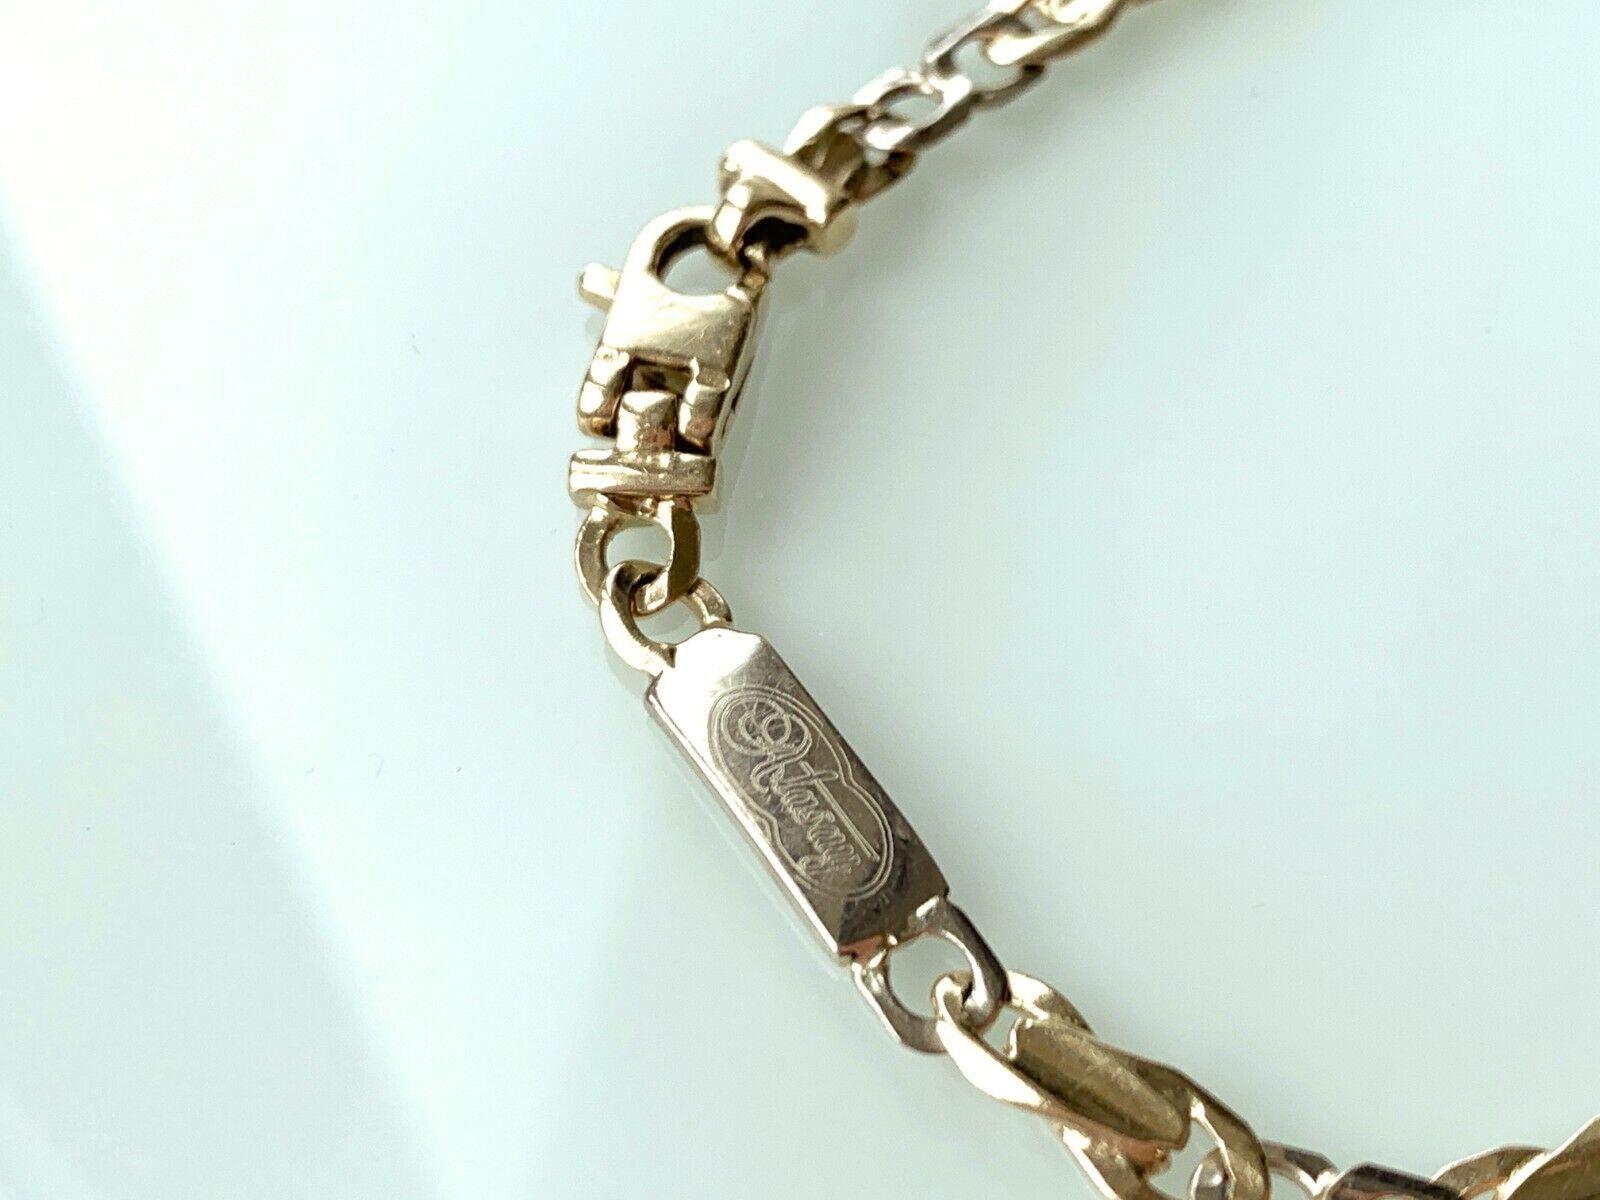 bracelet en or 14ct par les orfèvres turcs ATASAY
Or blanc et jaune 
Longueur : 7,5 pouces
Epaisseur 5mm
Poids 8,62 grammes